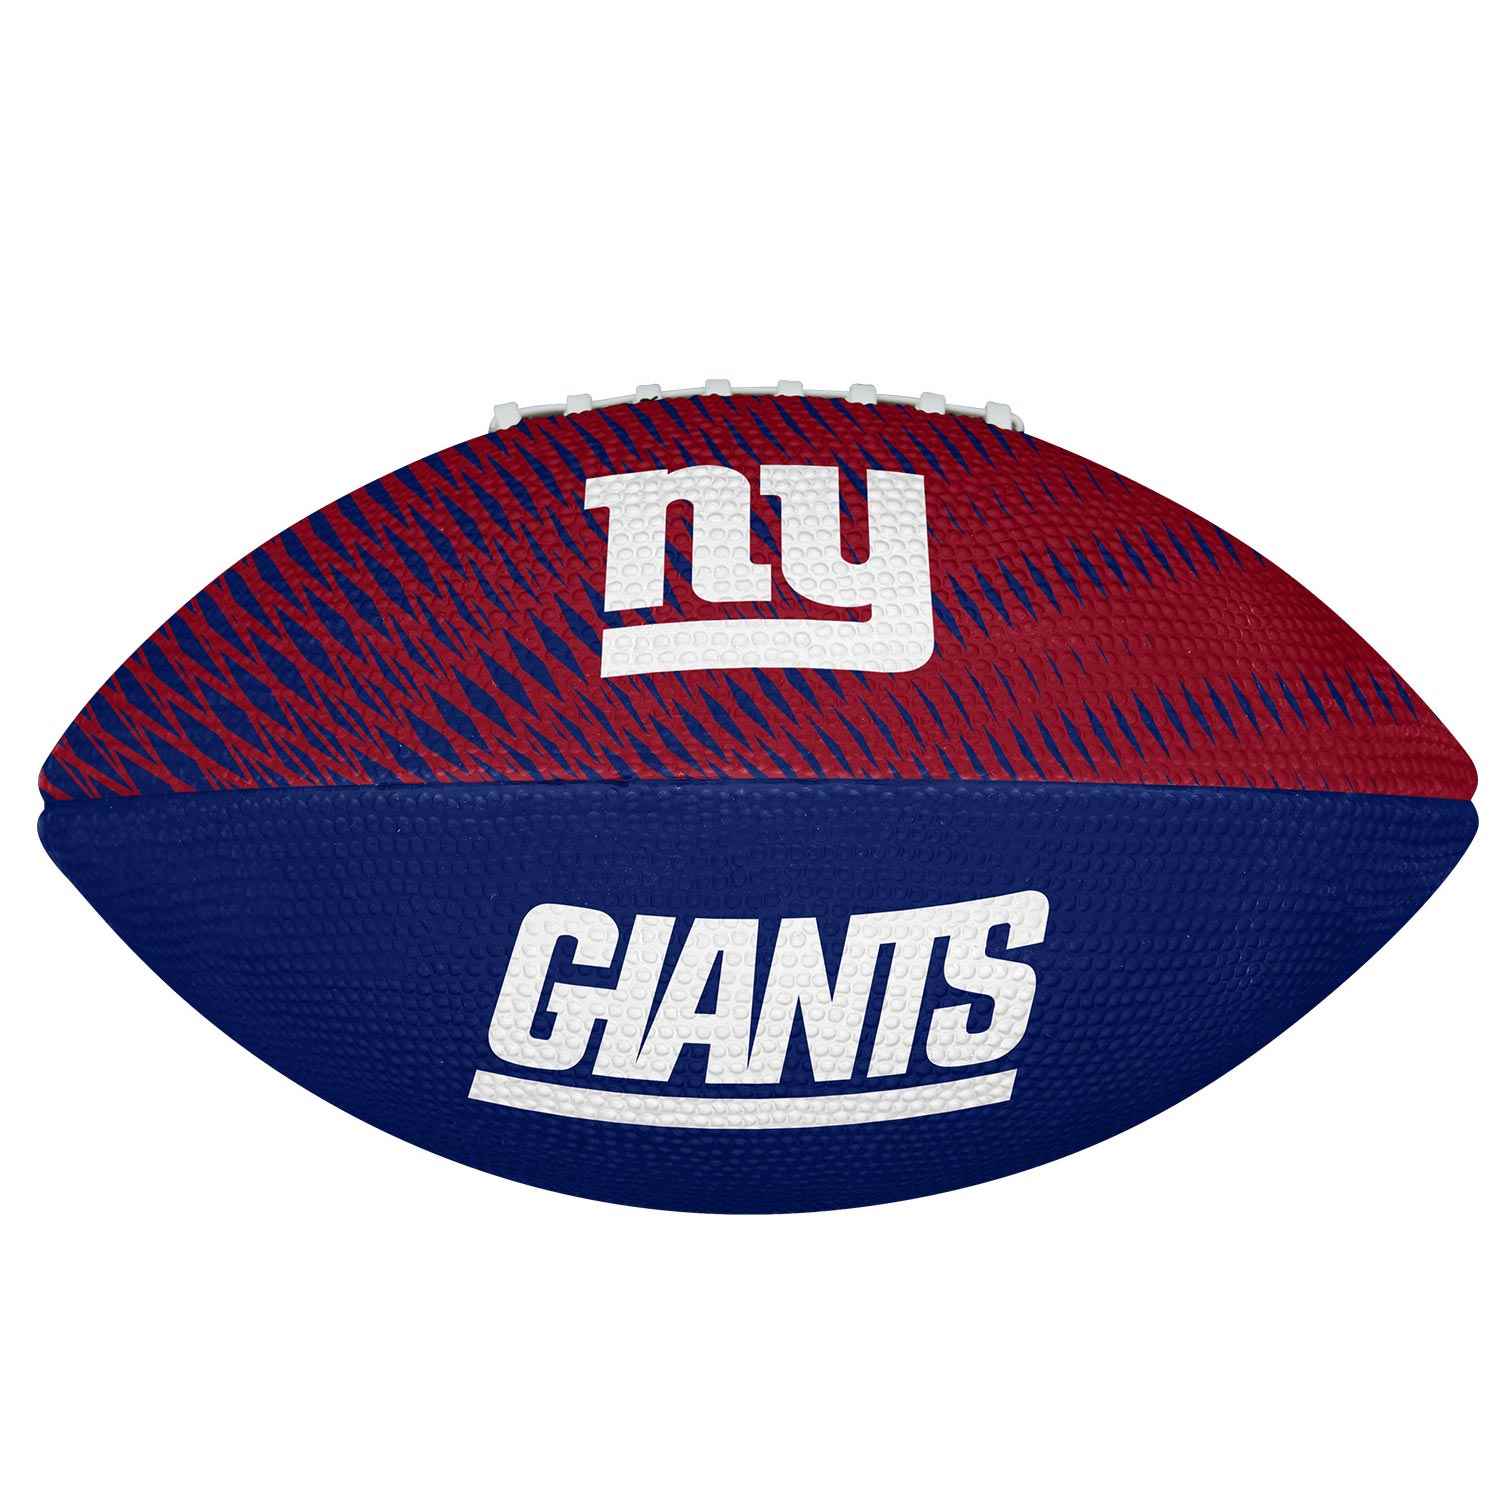 WILSON NFL NEW YORK GIANTS TAILGATE FOOTBALL